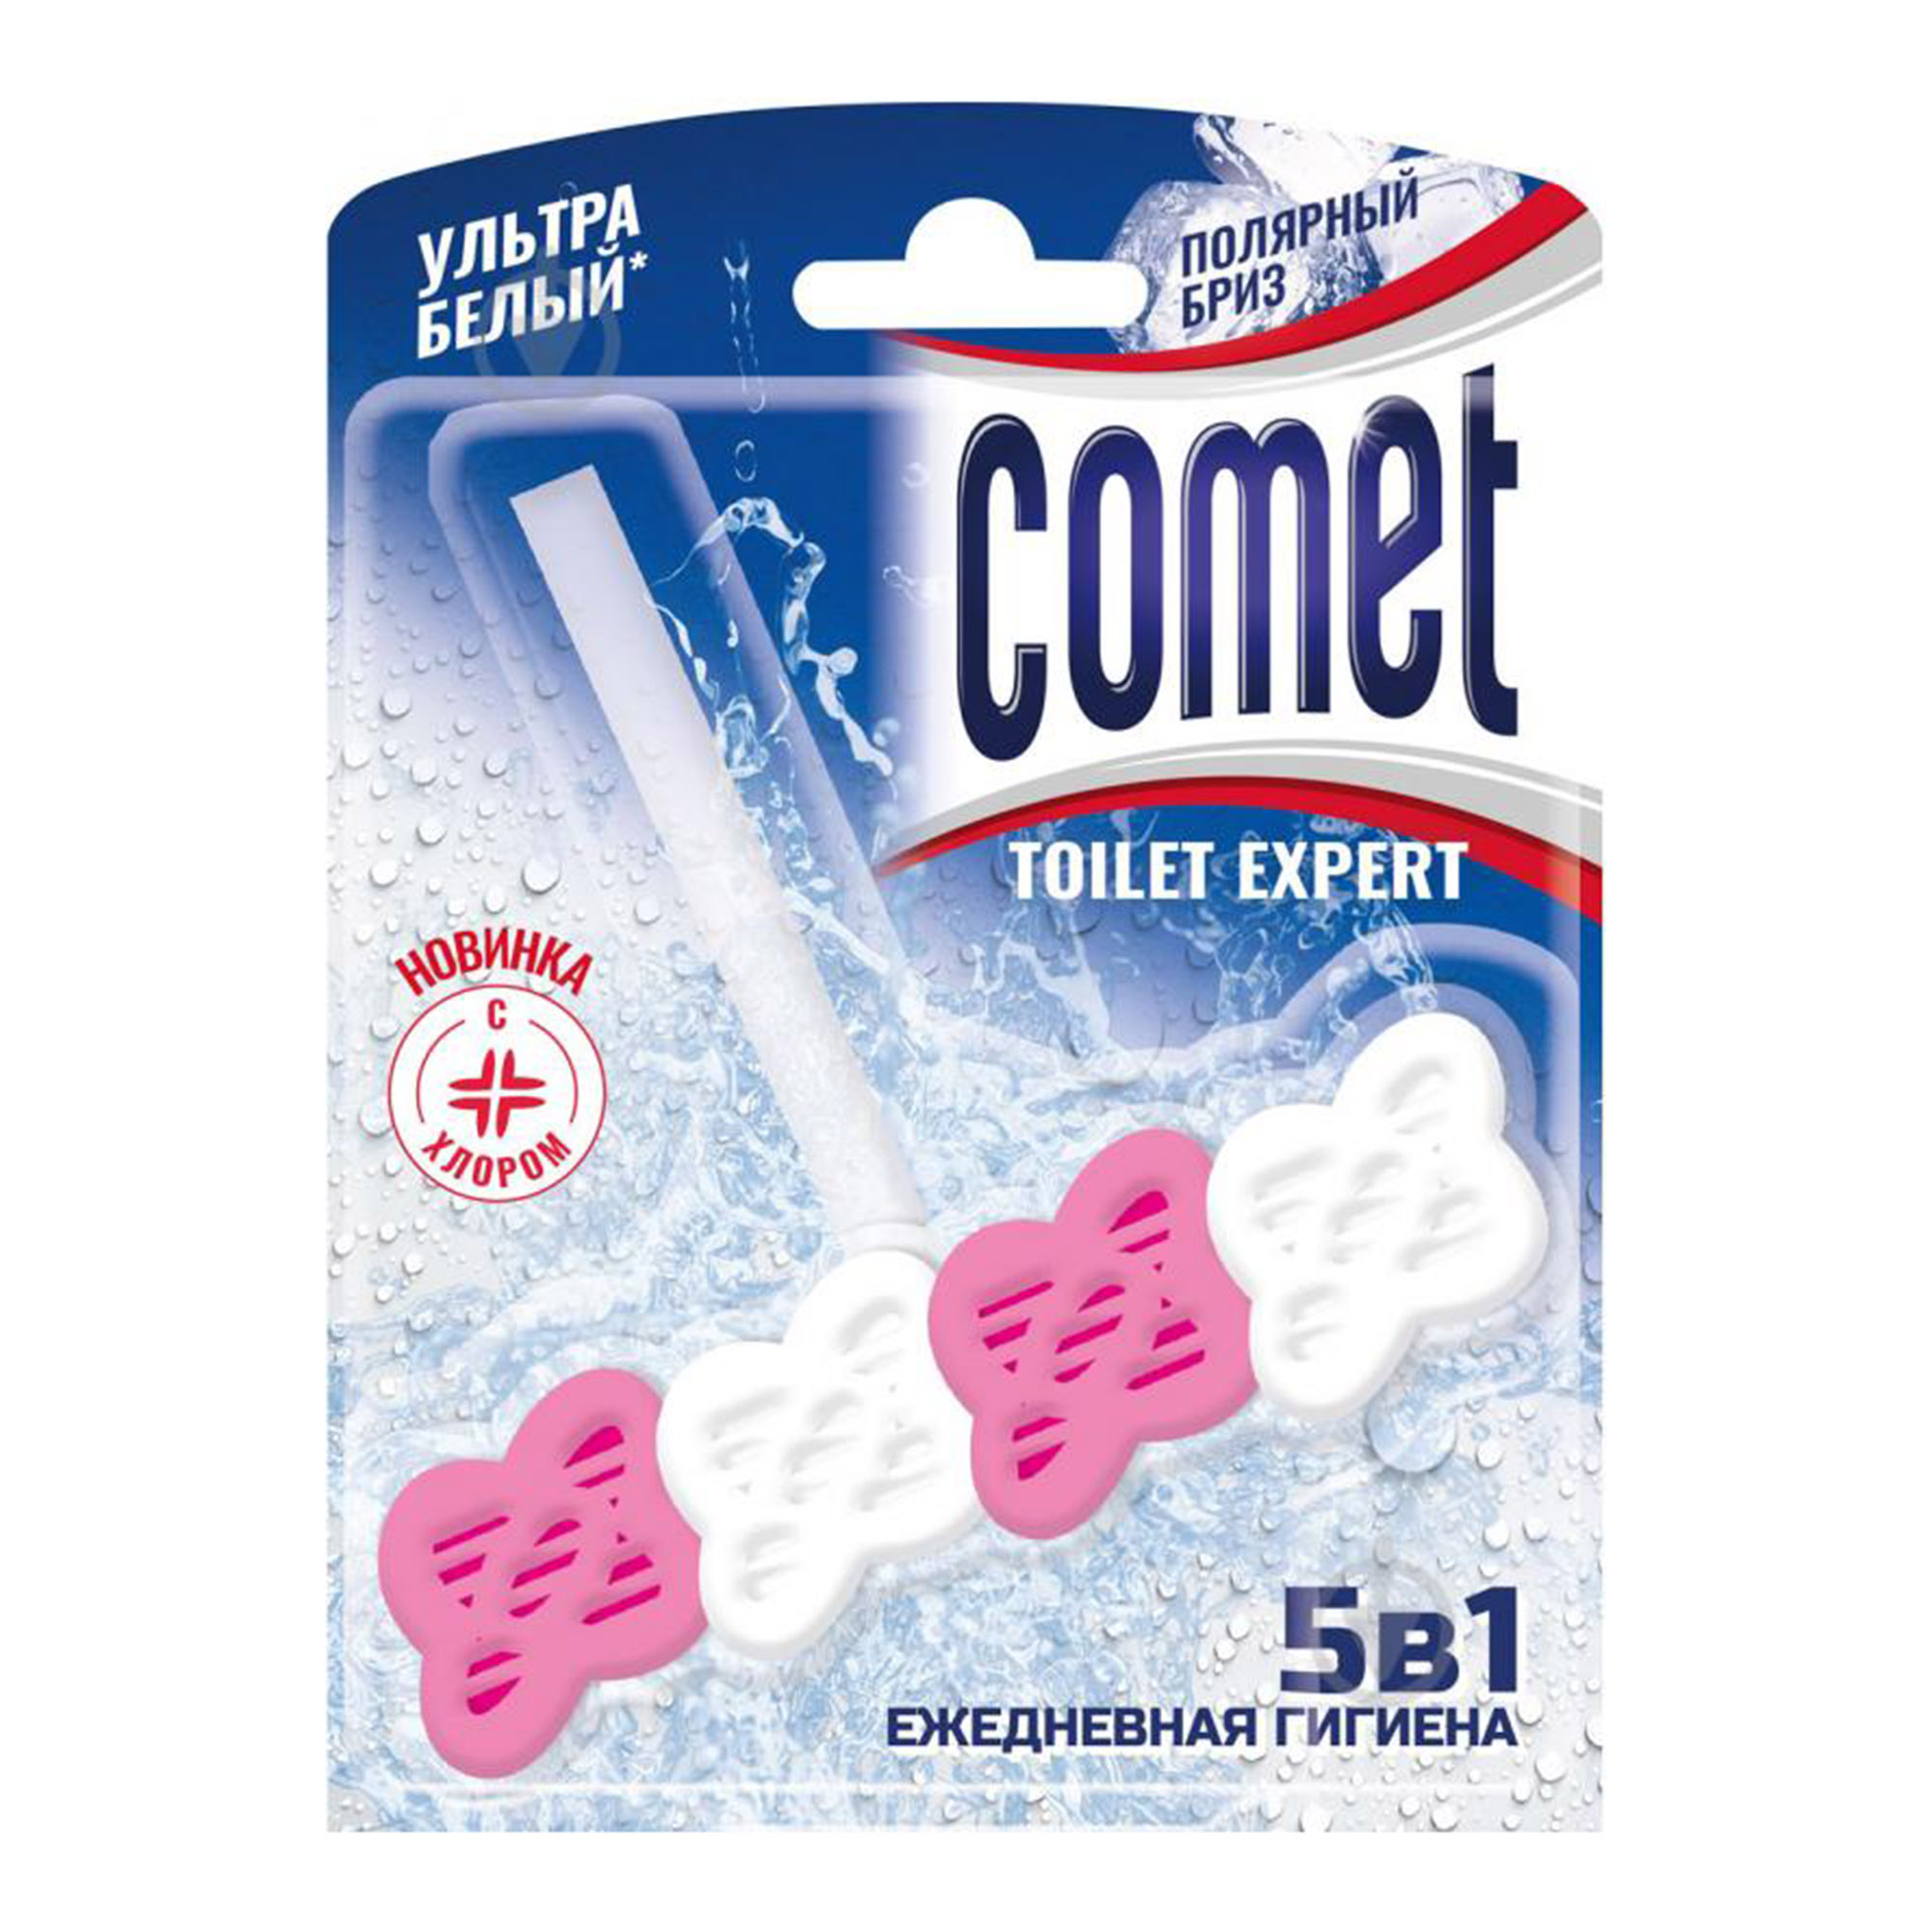 туалетный блок comet океан 48 г Туалетный блок Comet Полярный бриз 48 г